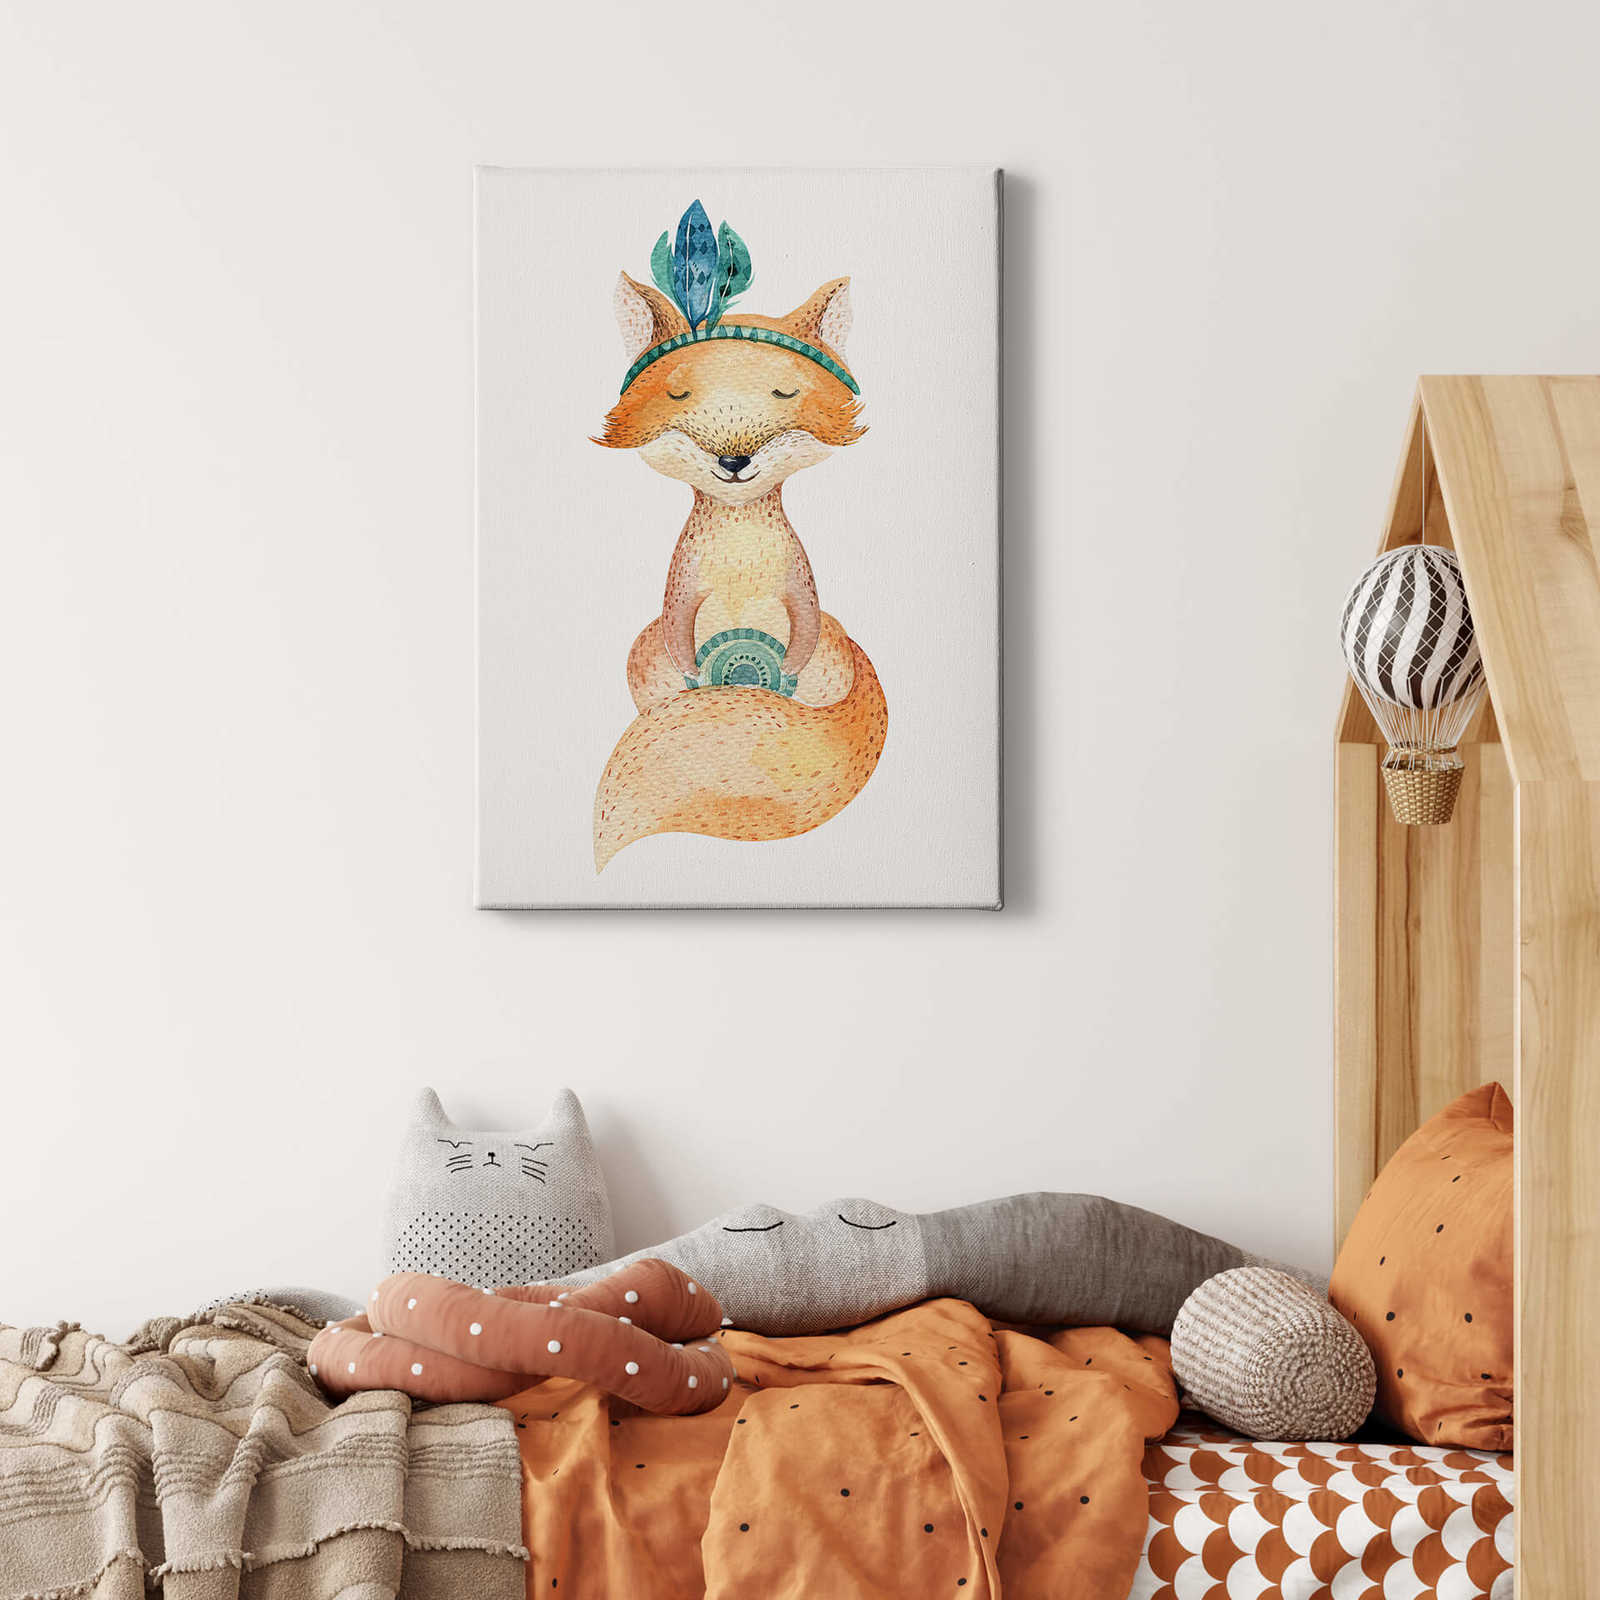             Tableau toile enfant Hippie renard de Kvilis - 0,50 m x 0,70 m
        